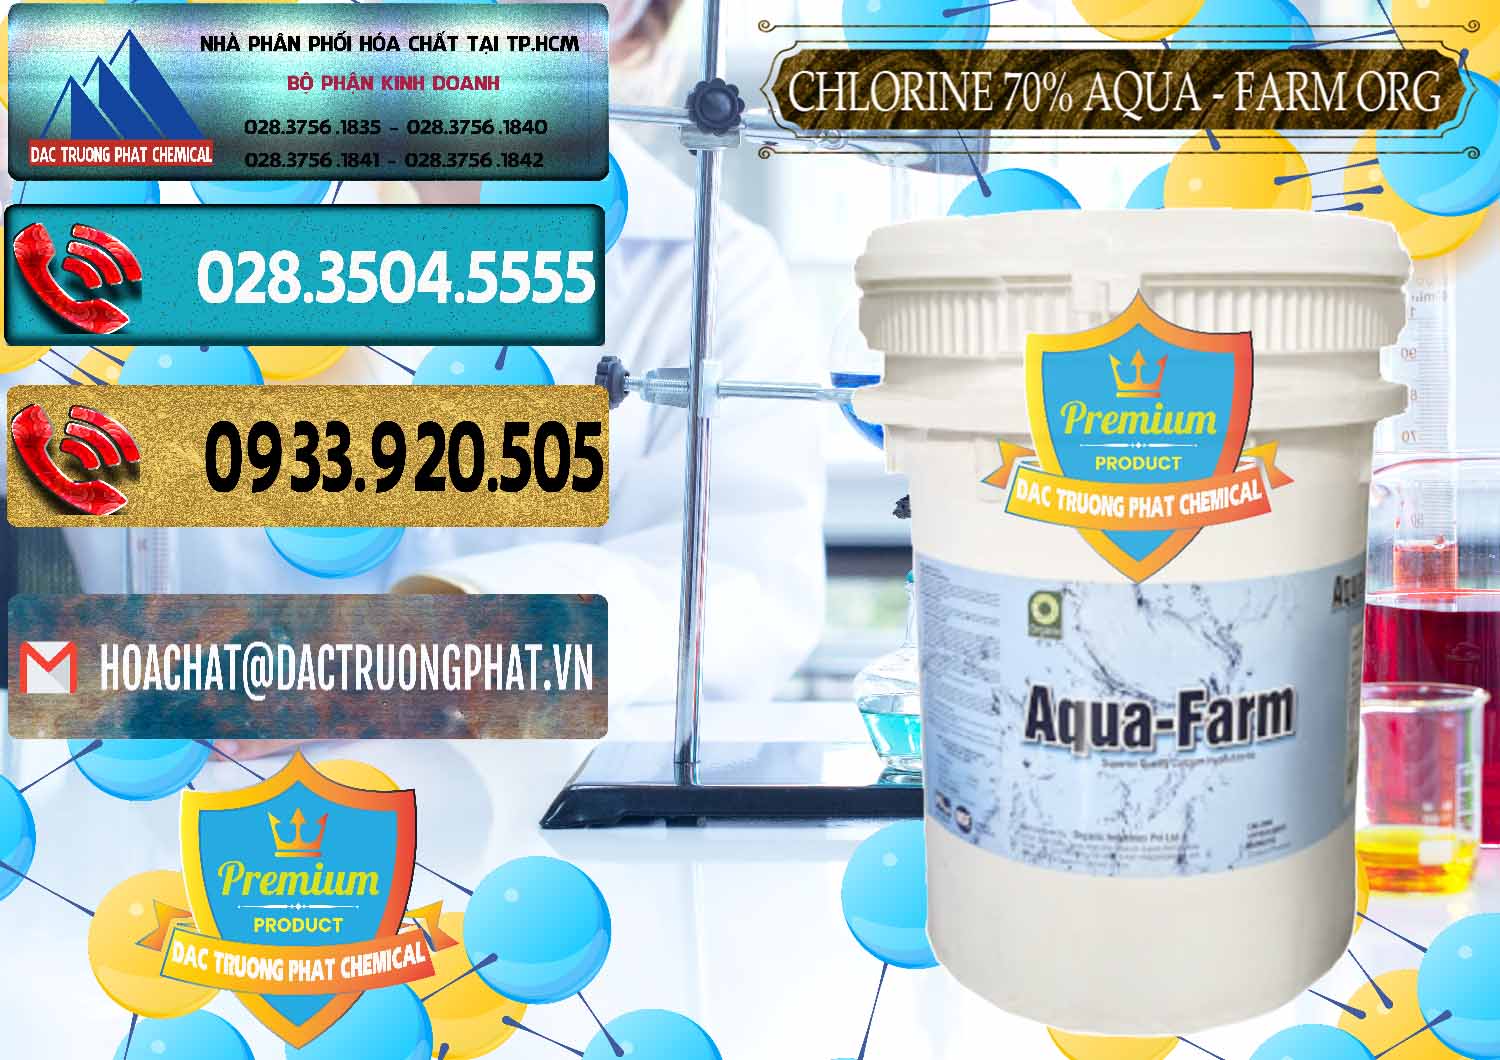 Đơn vị nhập khẩu ( bán ) Chlorine – Clorin 70% Aqua - Farm ORG Organic Ấn Độ India - 0246 - Công ty chuyên kinh doanh & cung cấp hóa chất tại TP.HCM - hoachatdetnhuom.com